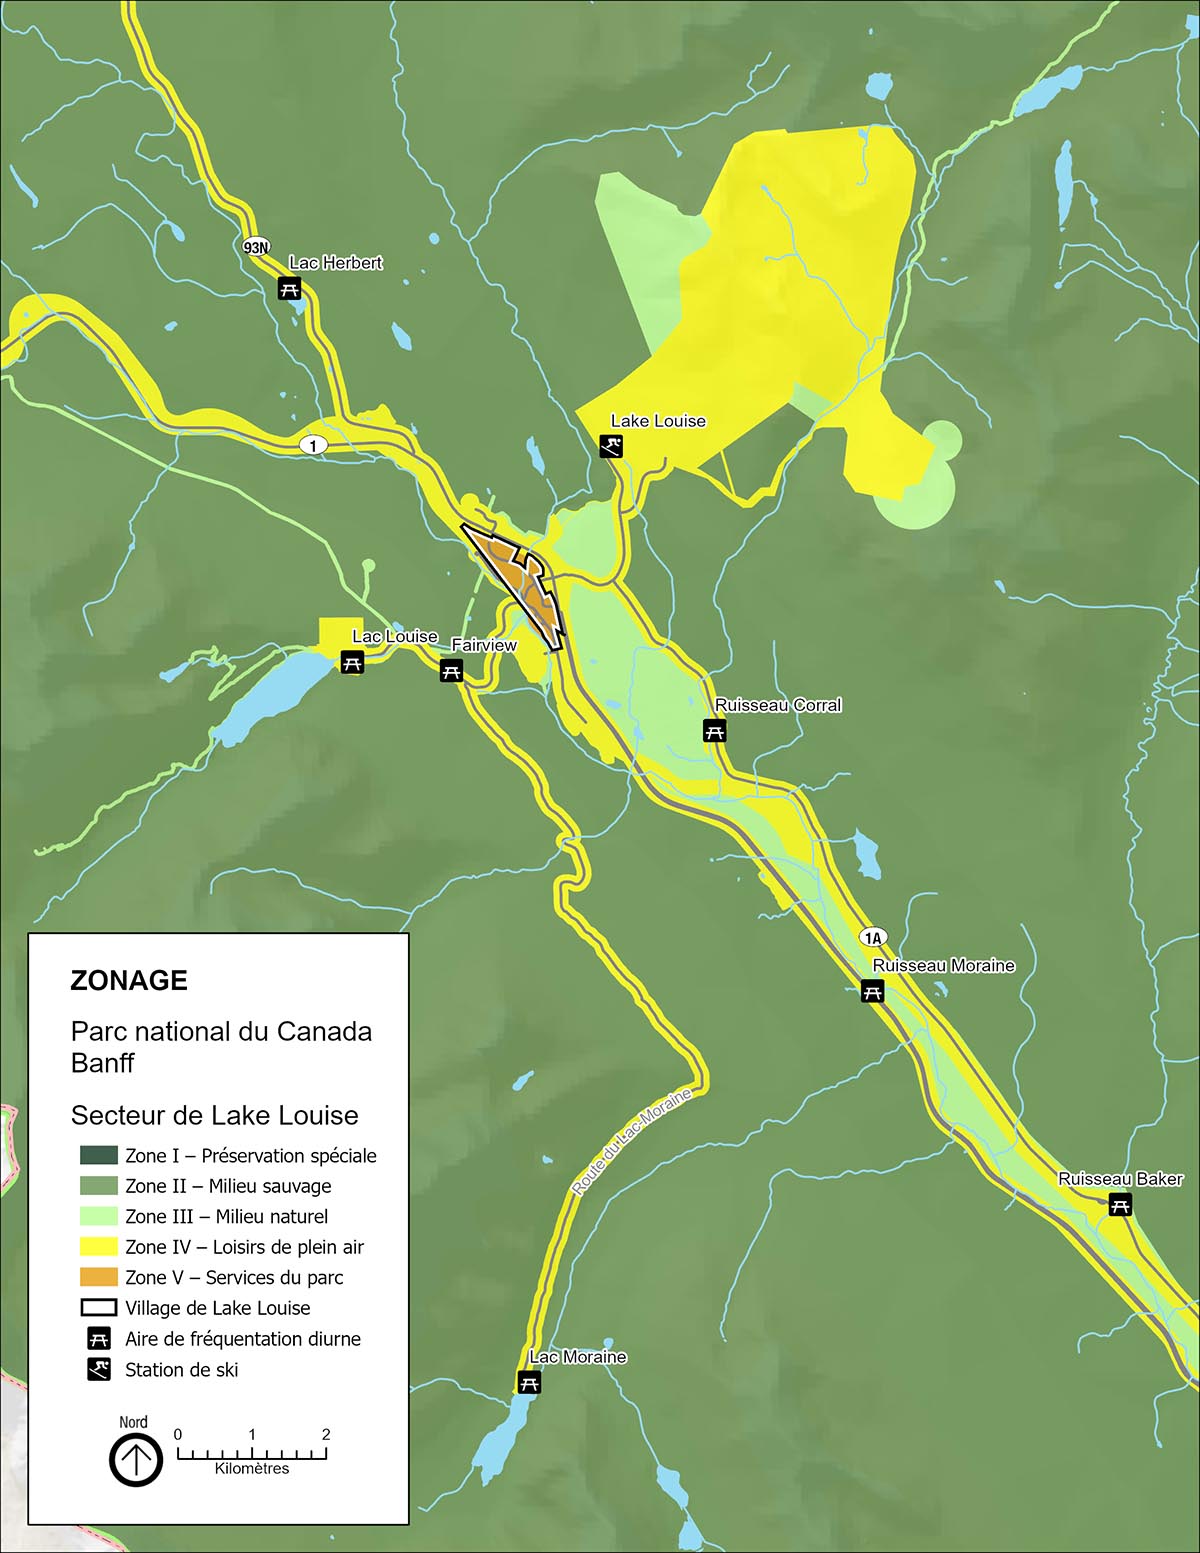  Carte 8 : Zonage du secteur de Lake Louise 